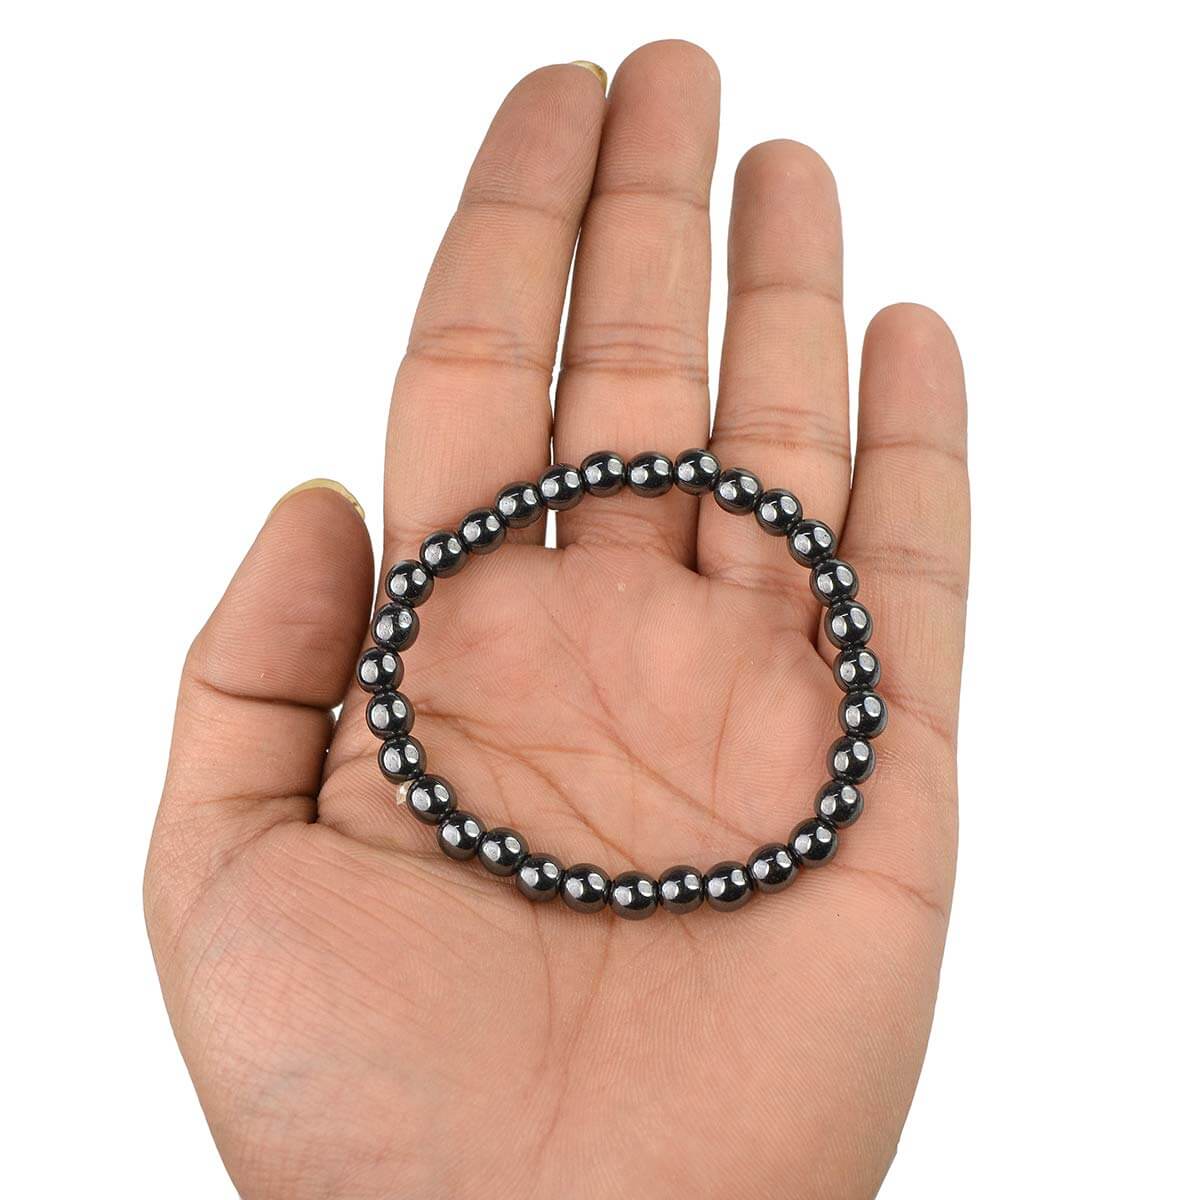 Hematite Crystal Bracelet for Reiki Healing 6 MM